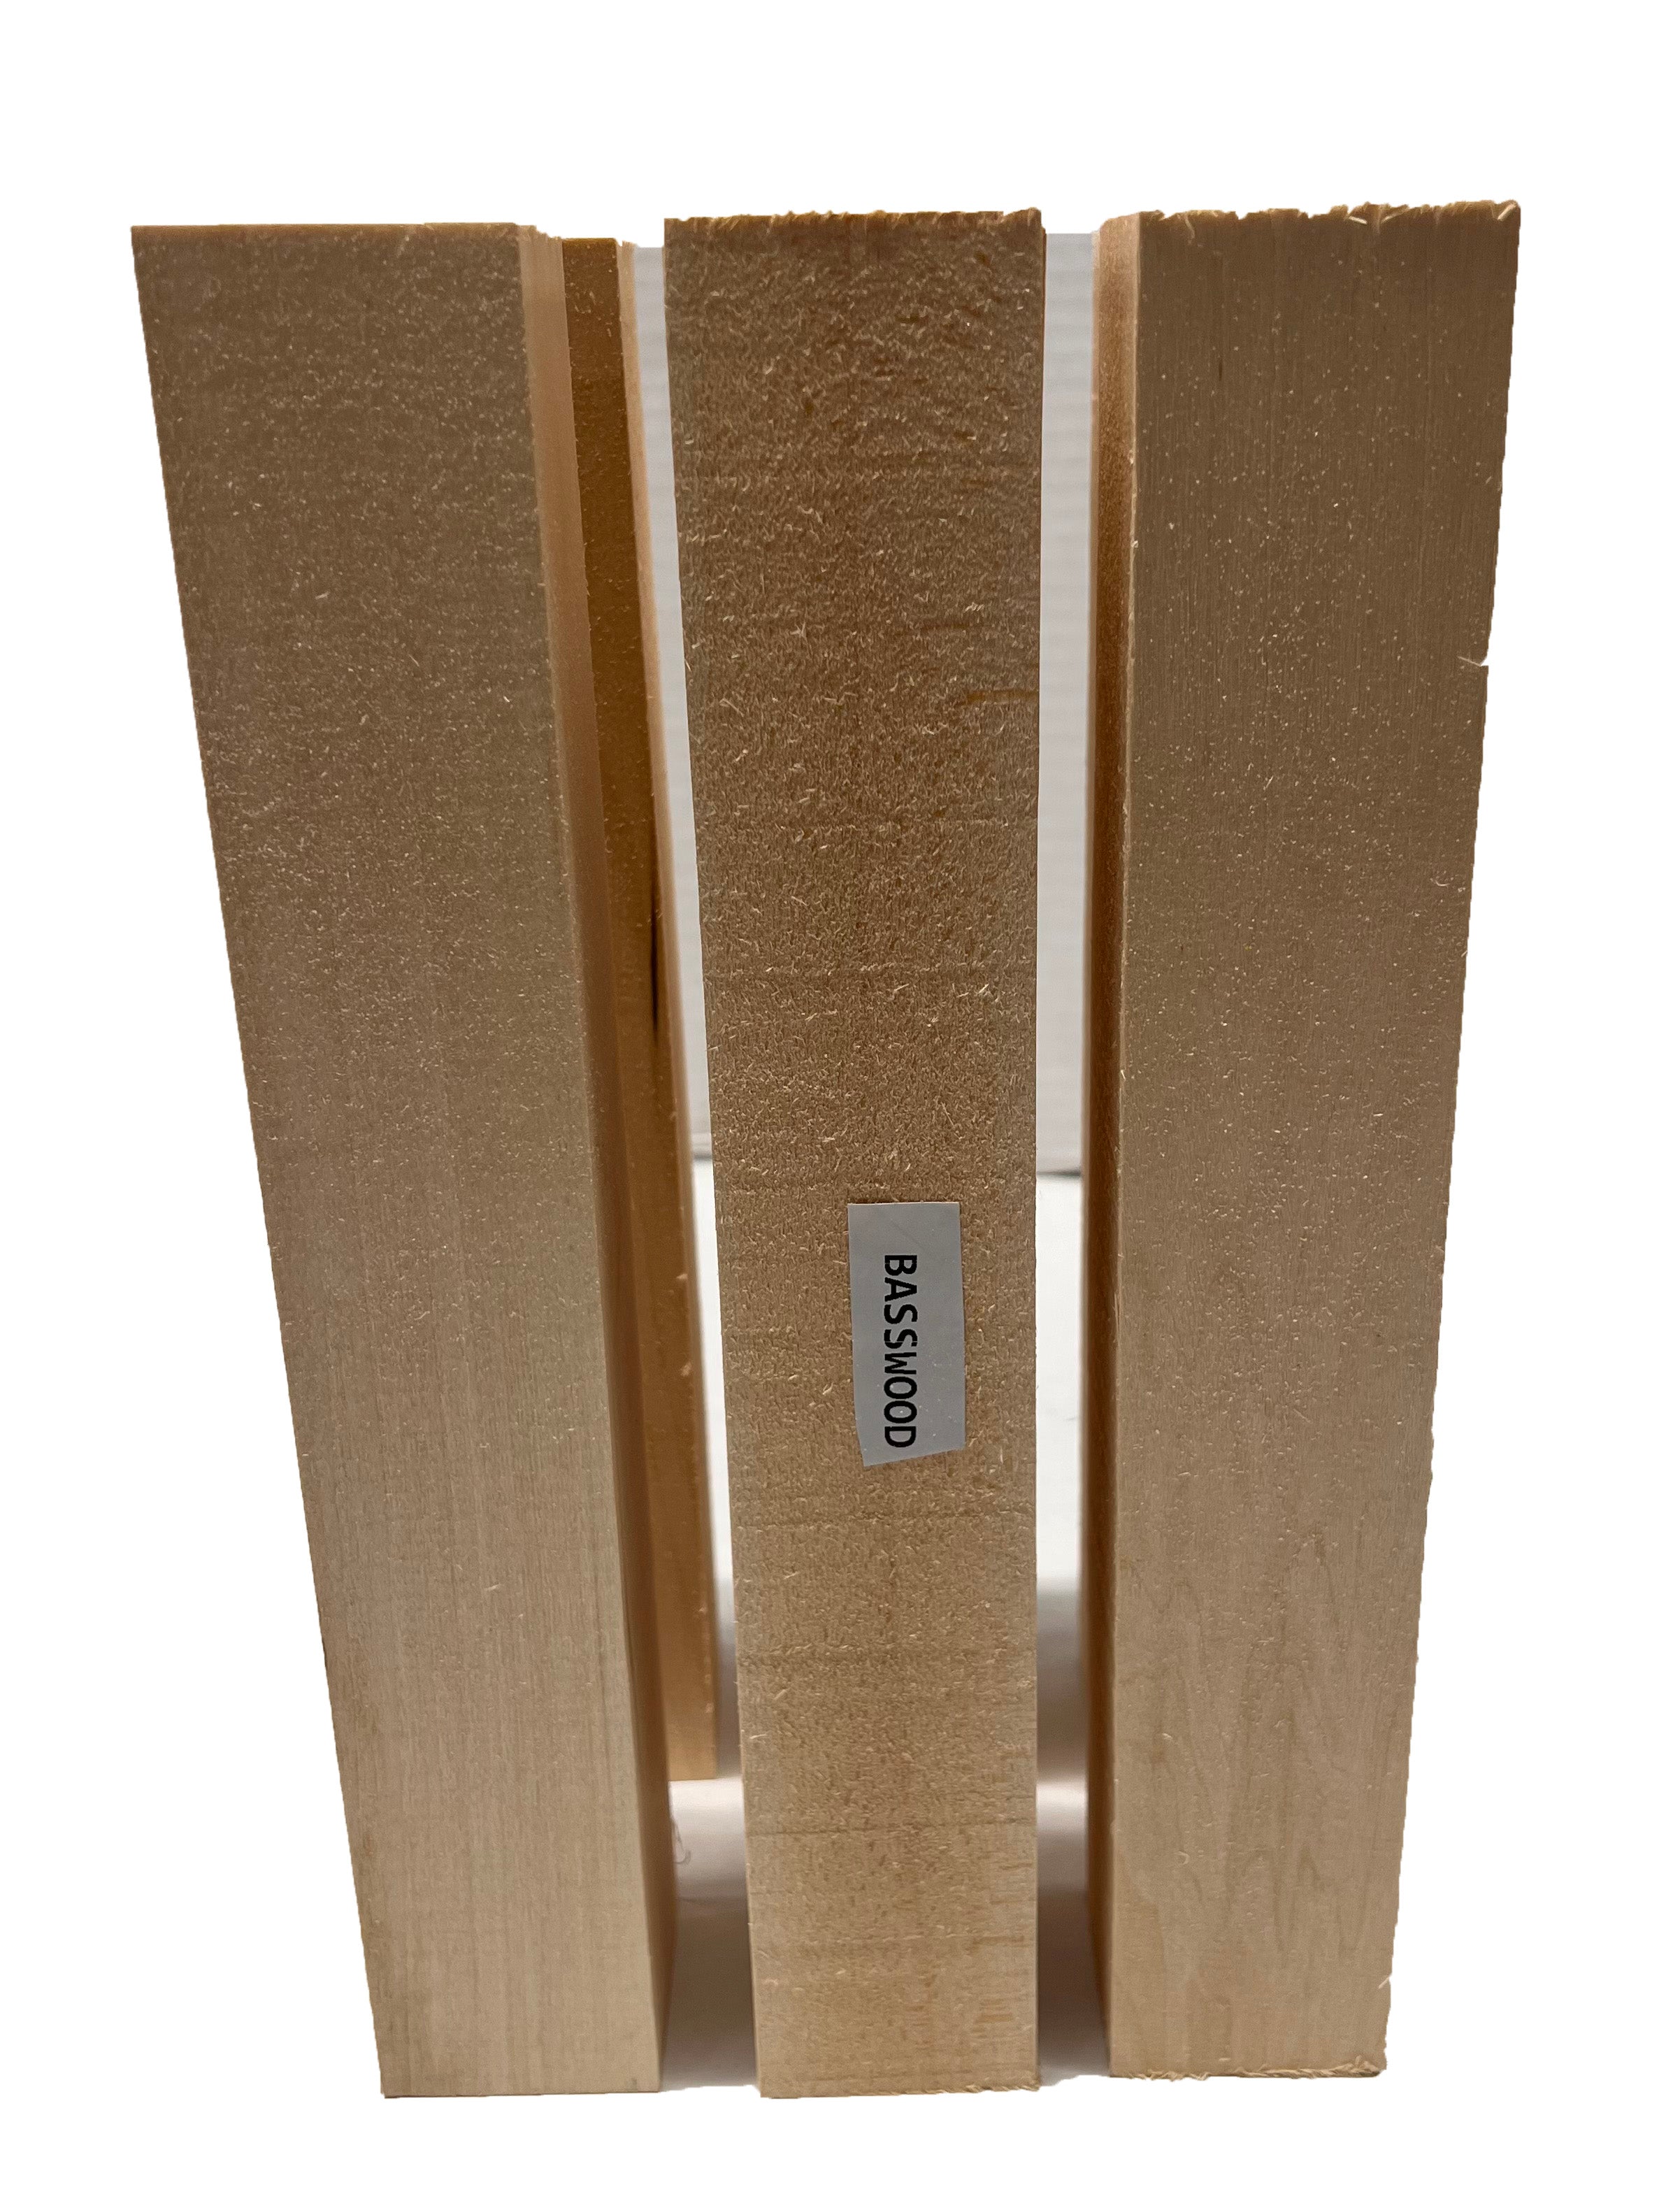 Paquete combinado de madera de tilo, torneado de madera adecuada, variedad  de tamaños y paquetes combinados para elegir (1, 2-1/2 x 2-1/2 x 6)